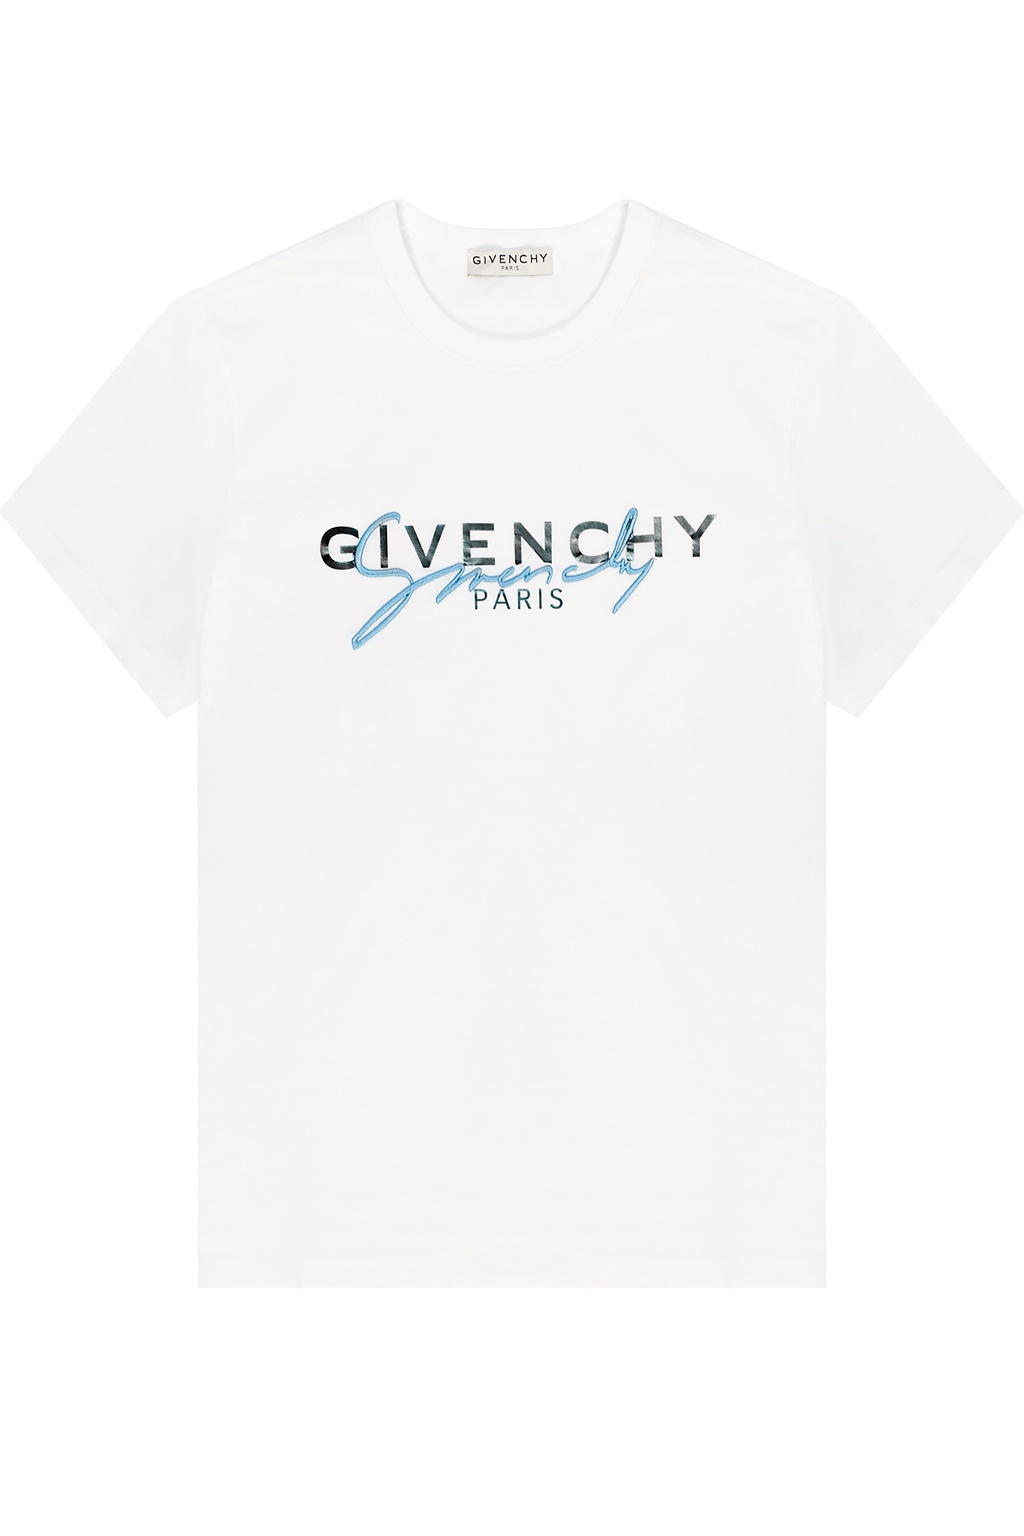 givenchy logo t shirt